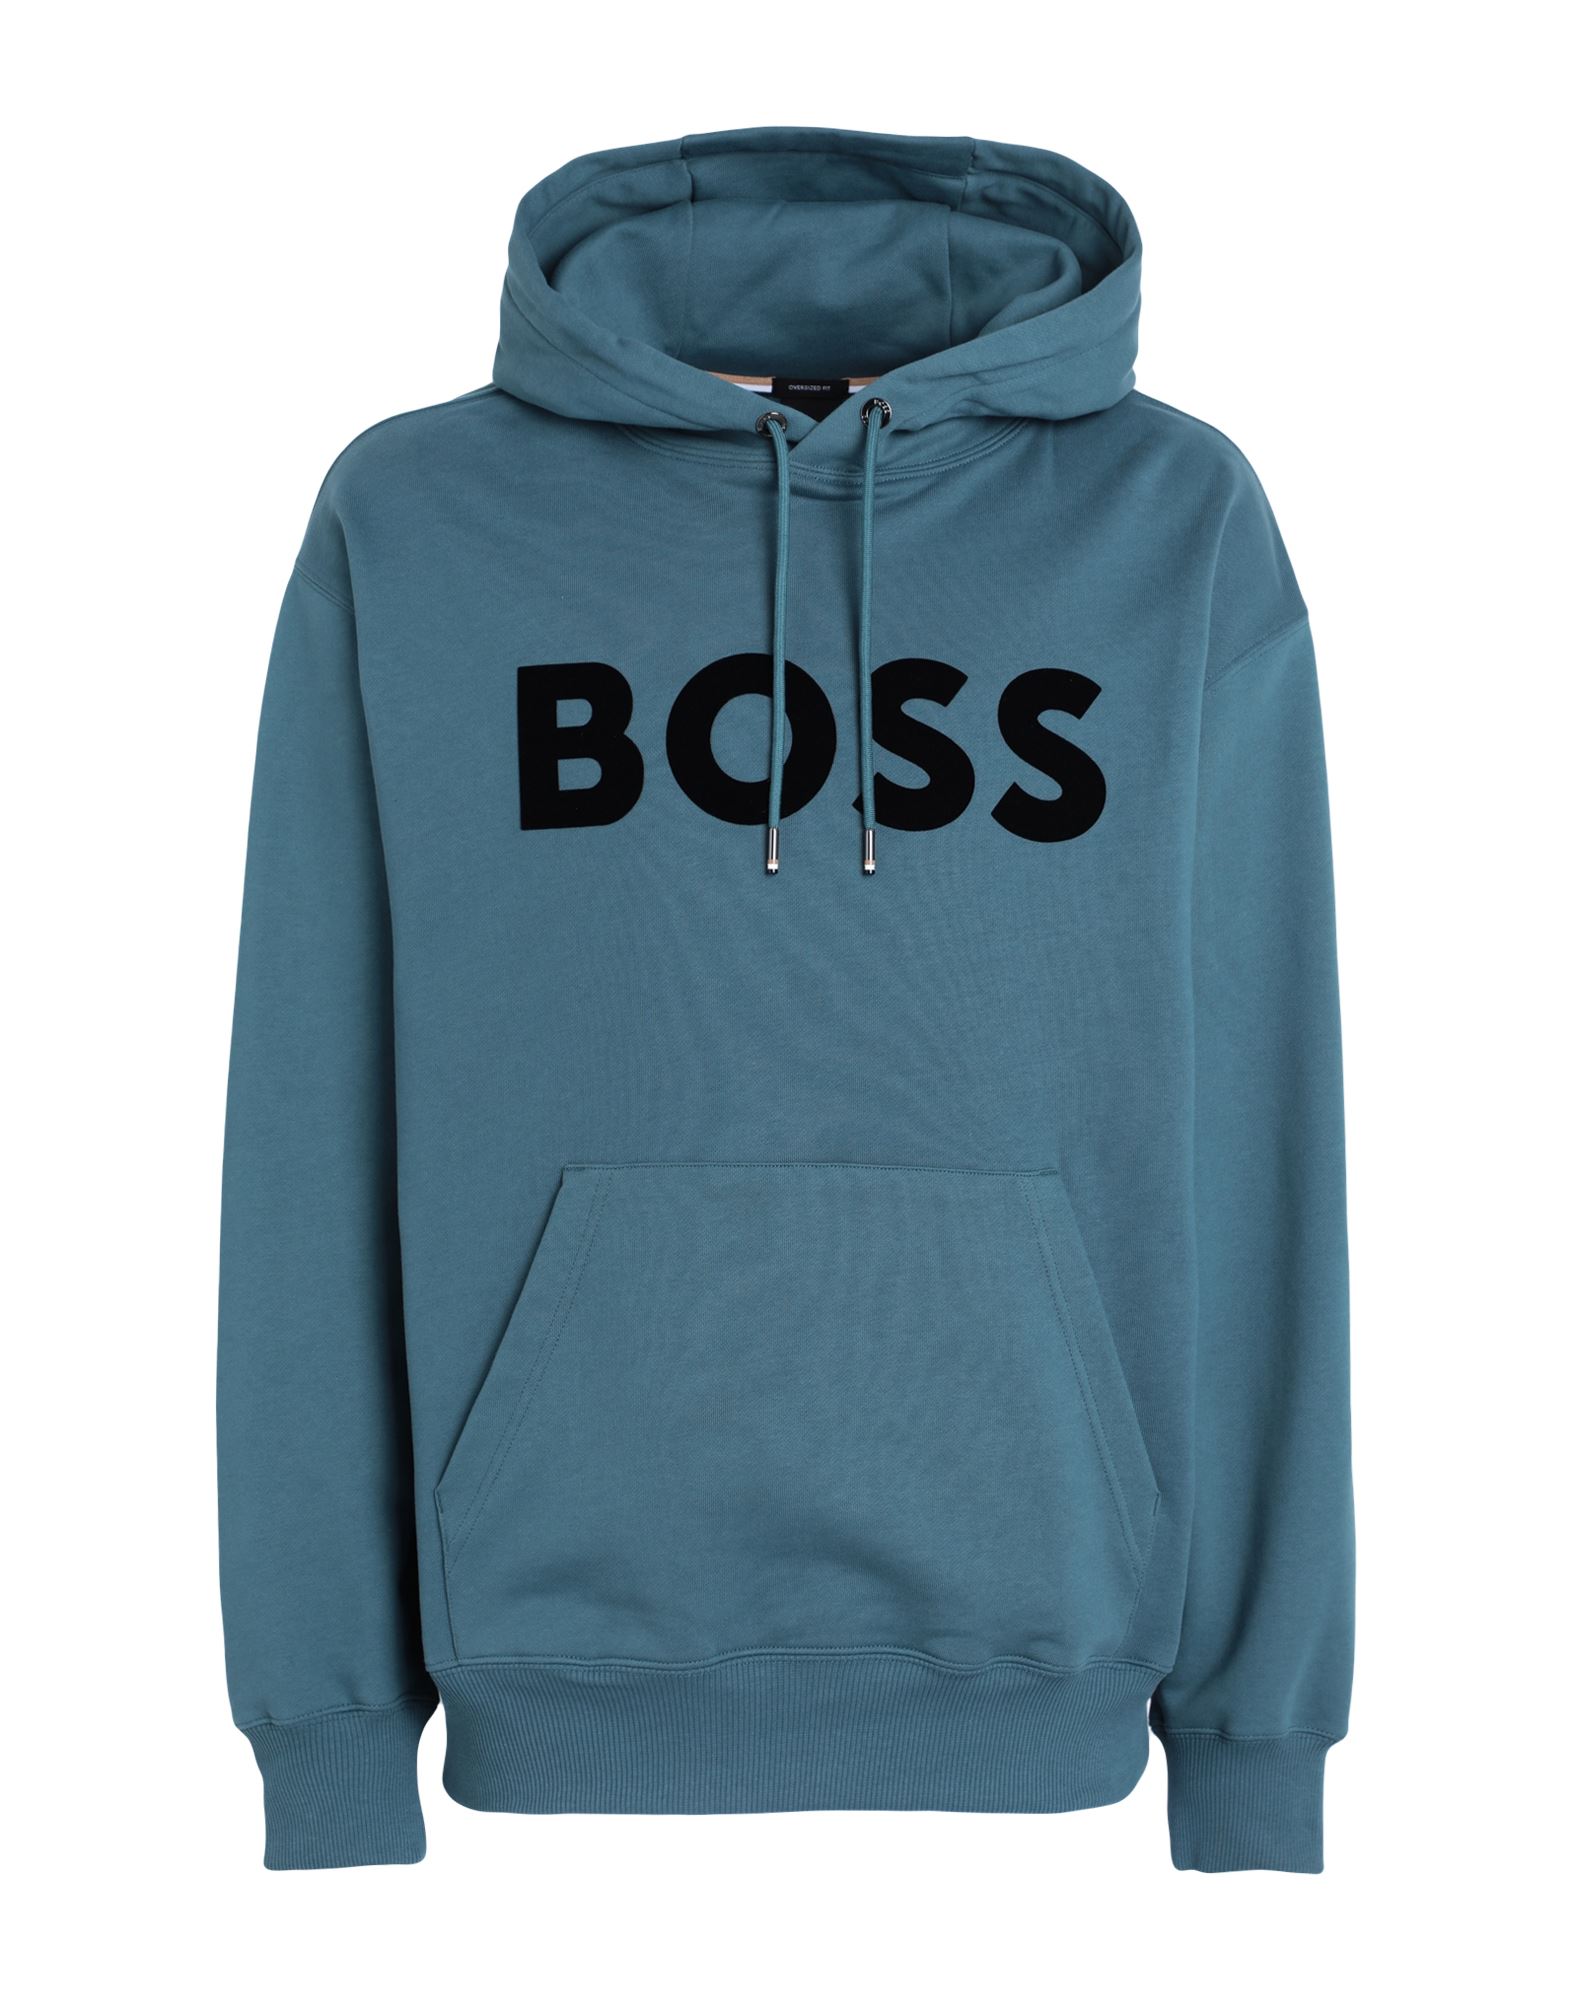 BOSS Sweatshirt Herren Blaugrau von BOSS